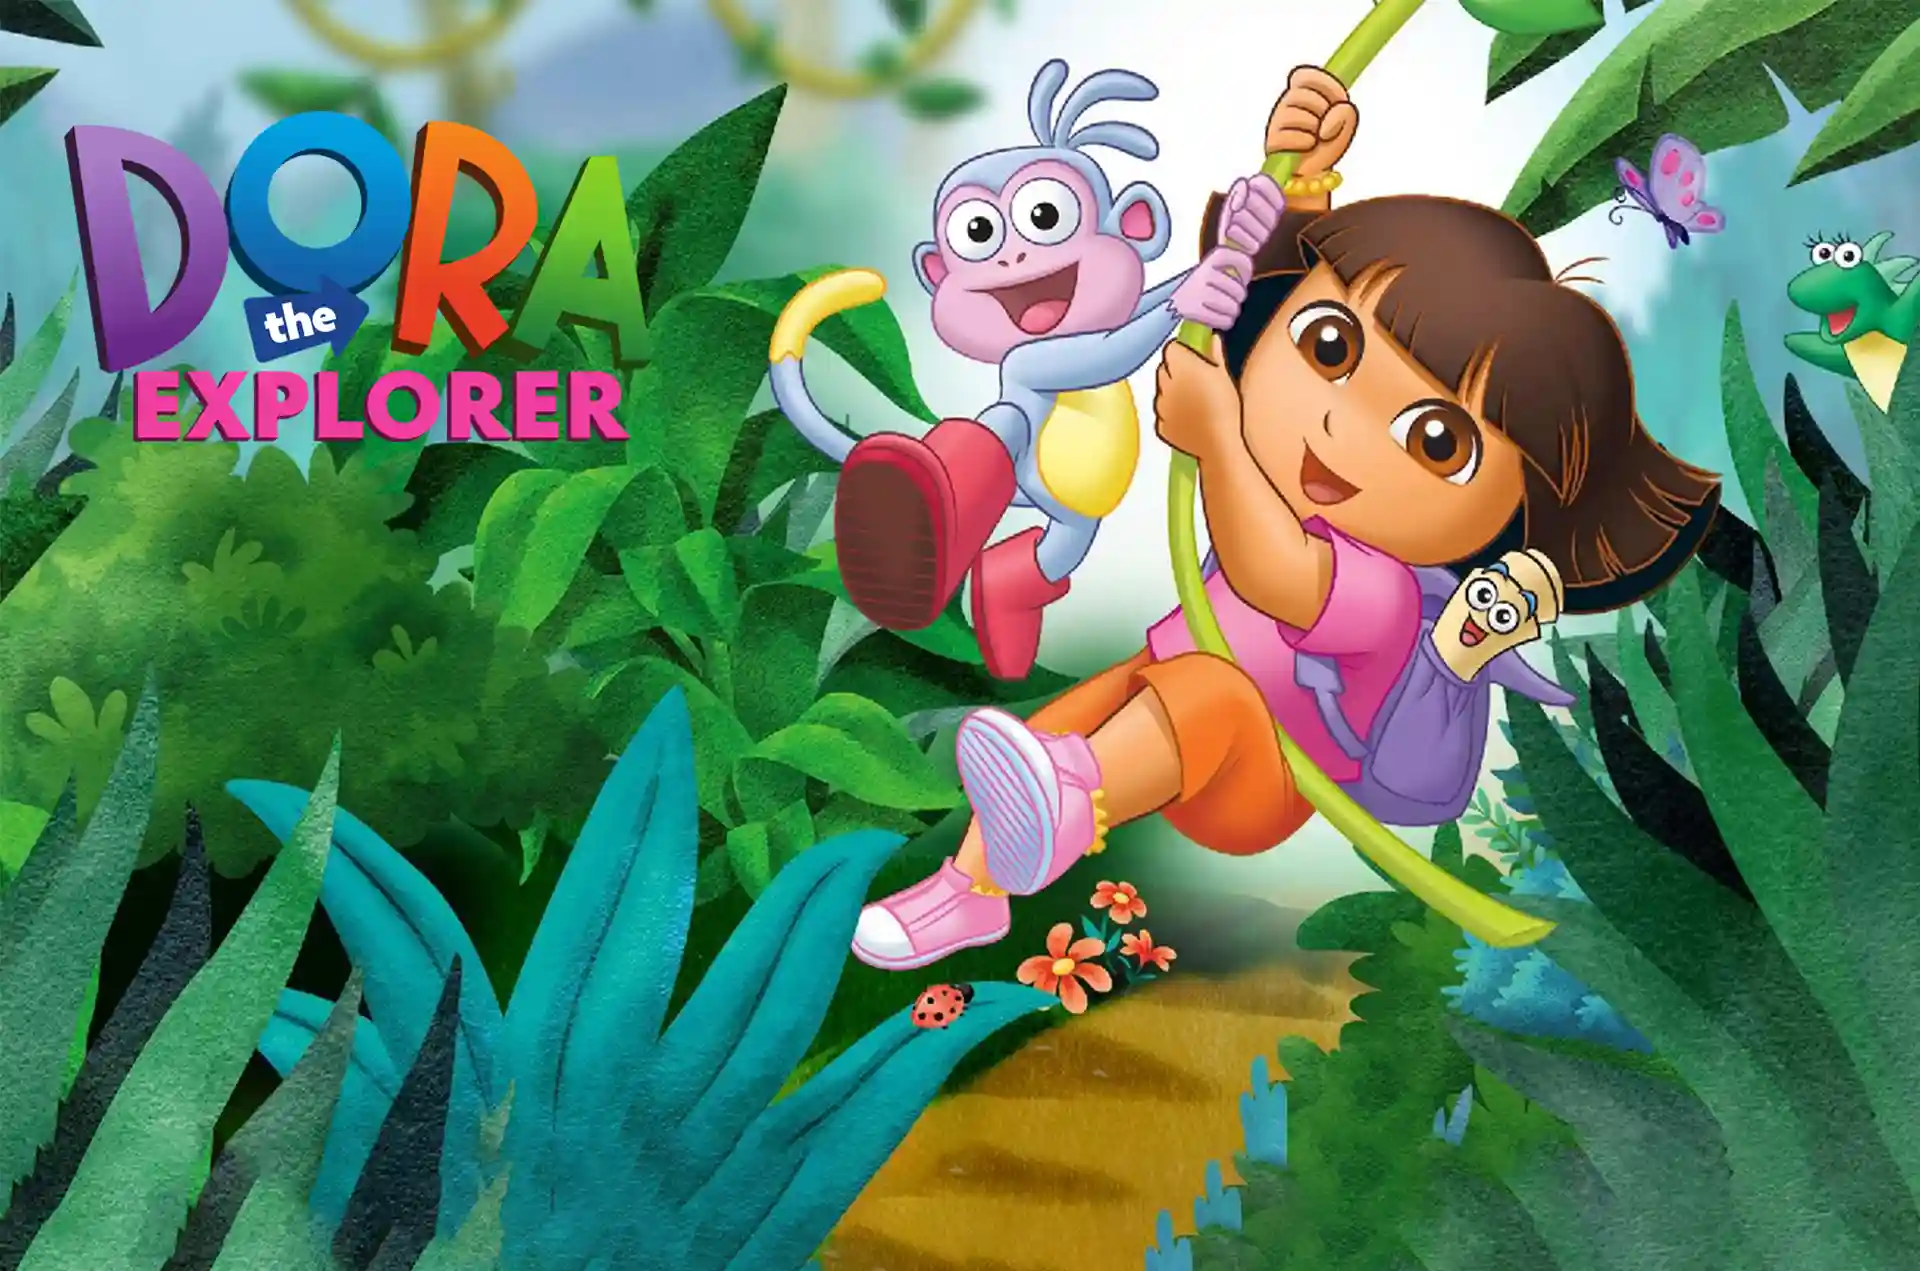 Presenting to you Dora The Explorer